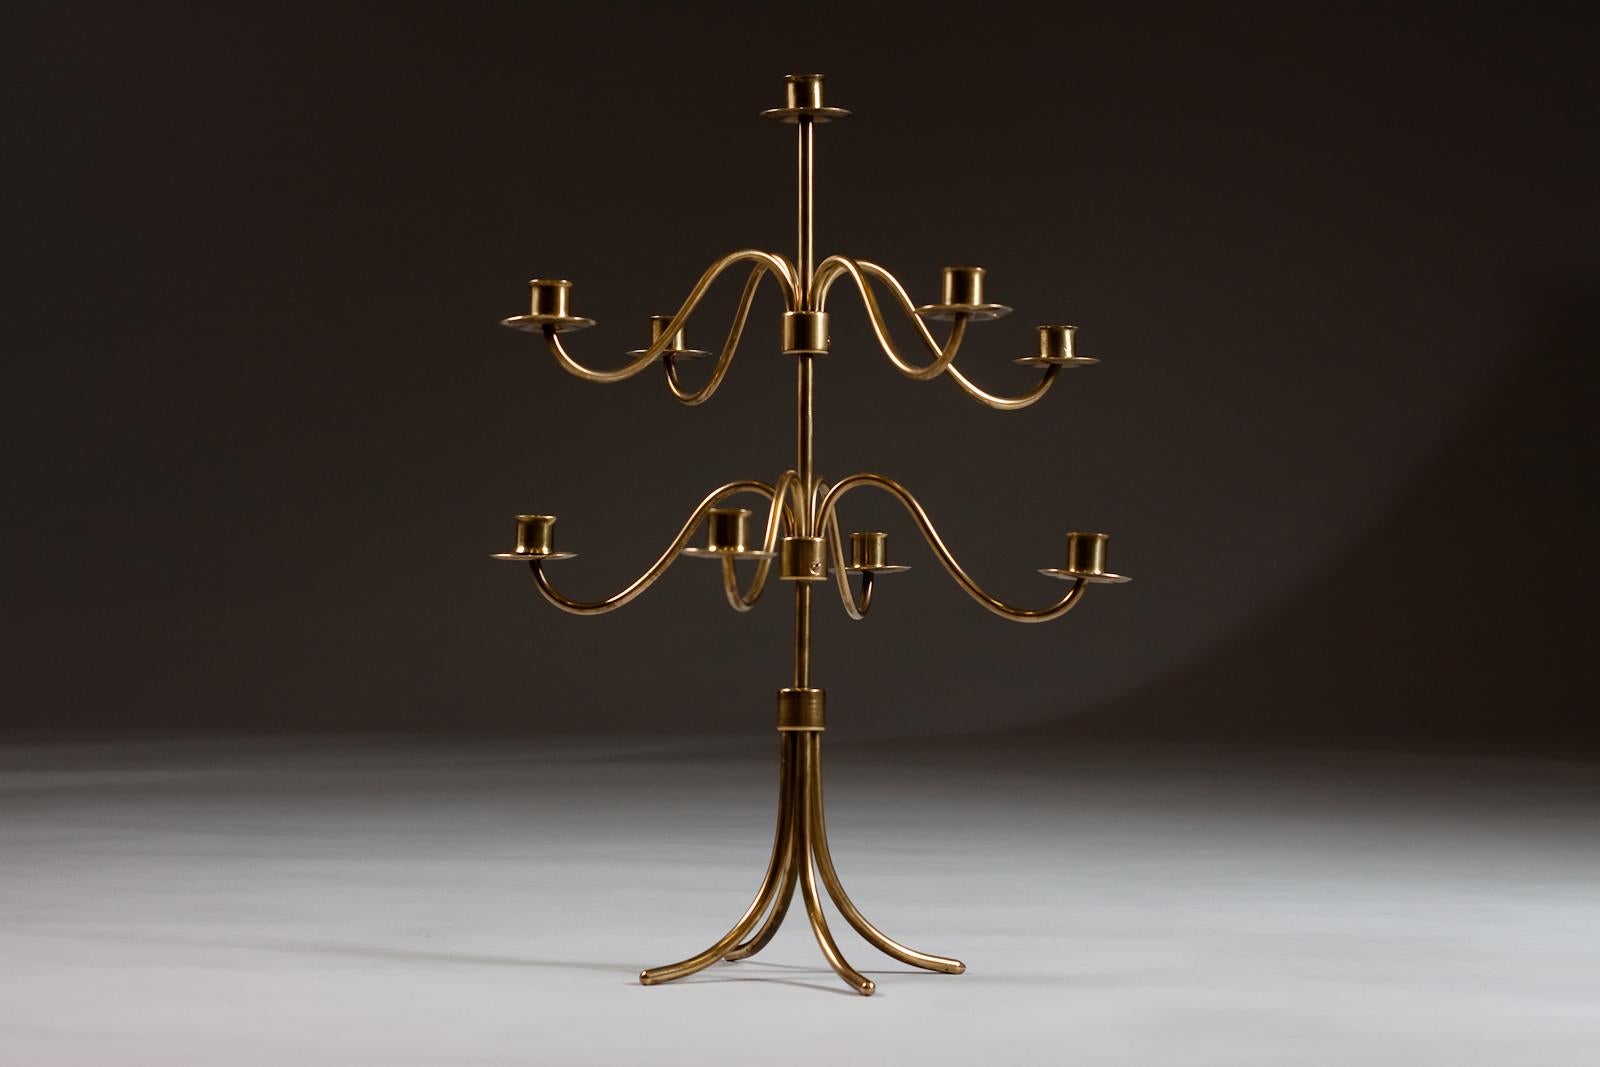 Magnifique candélabre réglable en laiton du célèbre designer Josef Frank de Suède, conçu pour Svenskt Tenn. Le candélabre peut contenir 9 bougies et, grâce à sa taille, il attire le regard dans n'importe quelle décoration intérieure moderne.